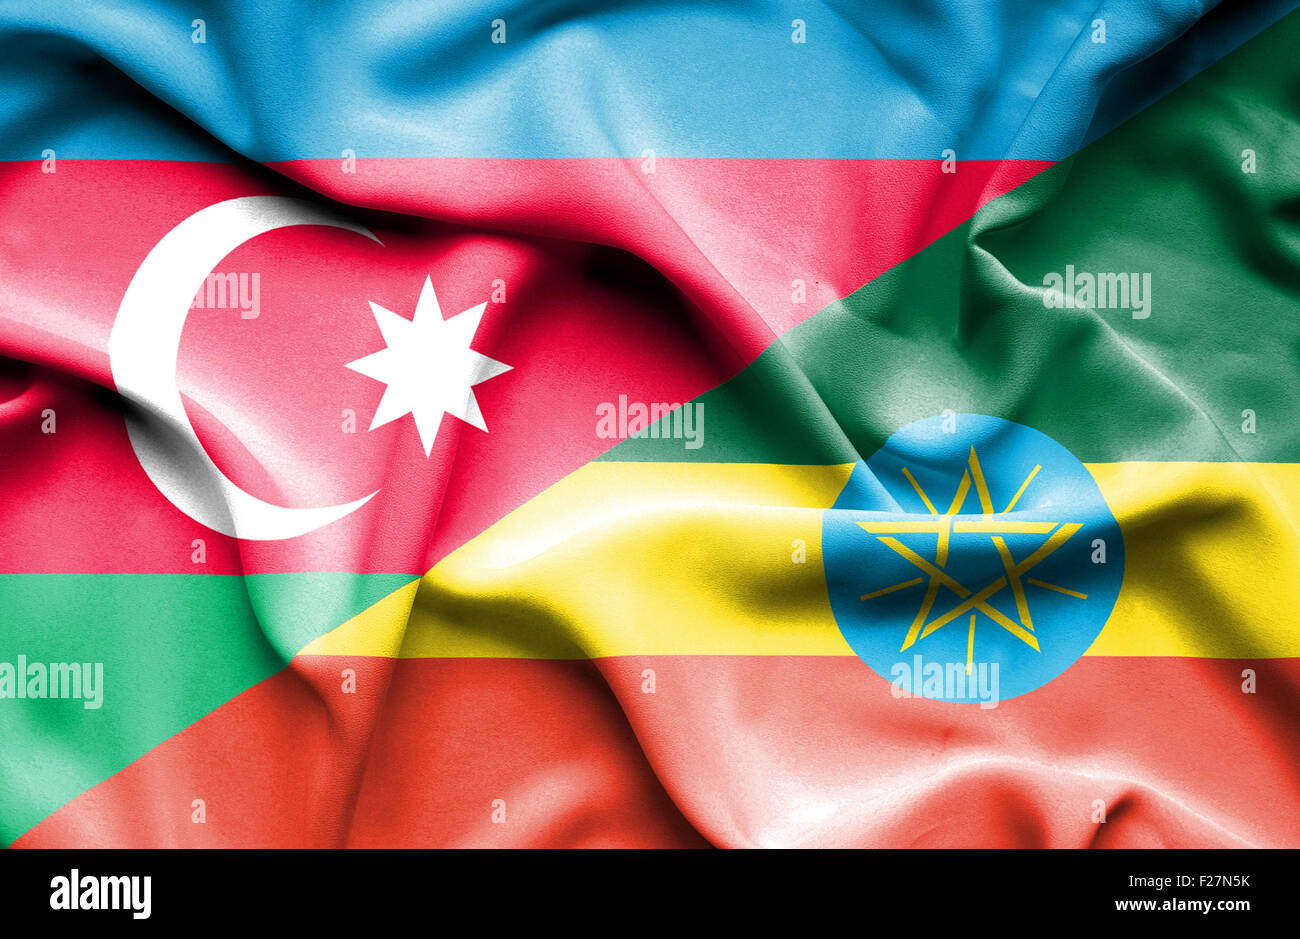 Waving flag of Ethiopia and Azerbaijan Stock Photo